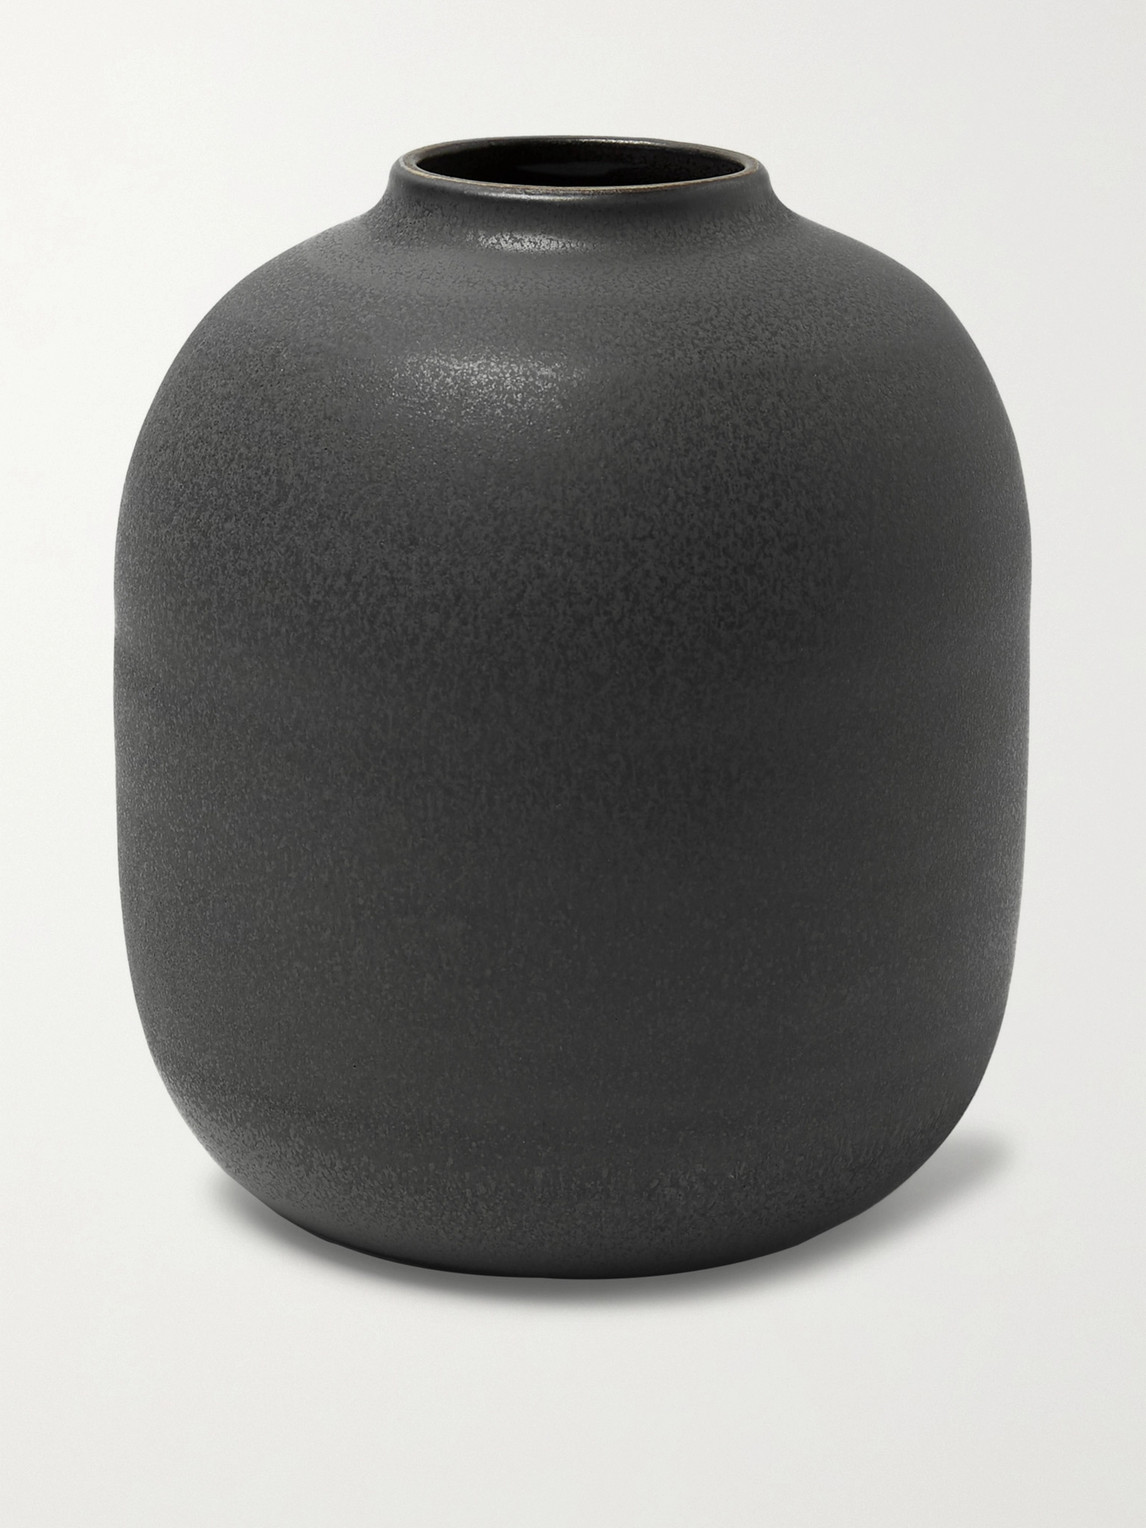 Roman & Williams Guild Ejnar Paulsen Ceramic Vase In Gray